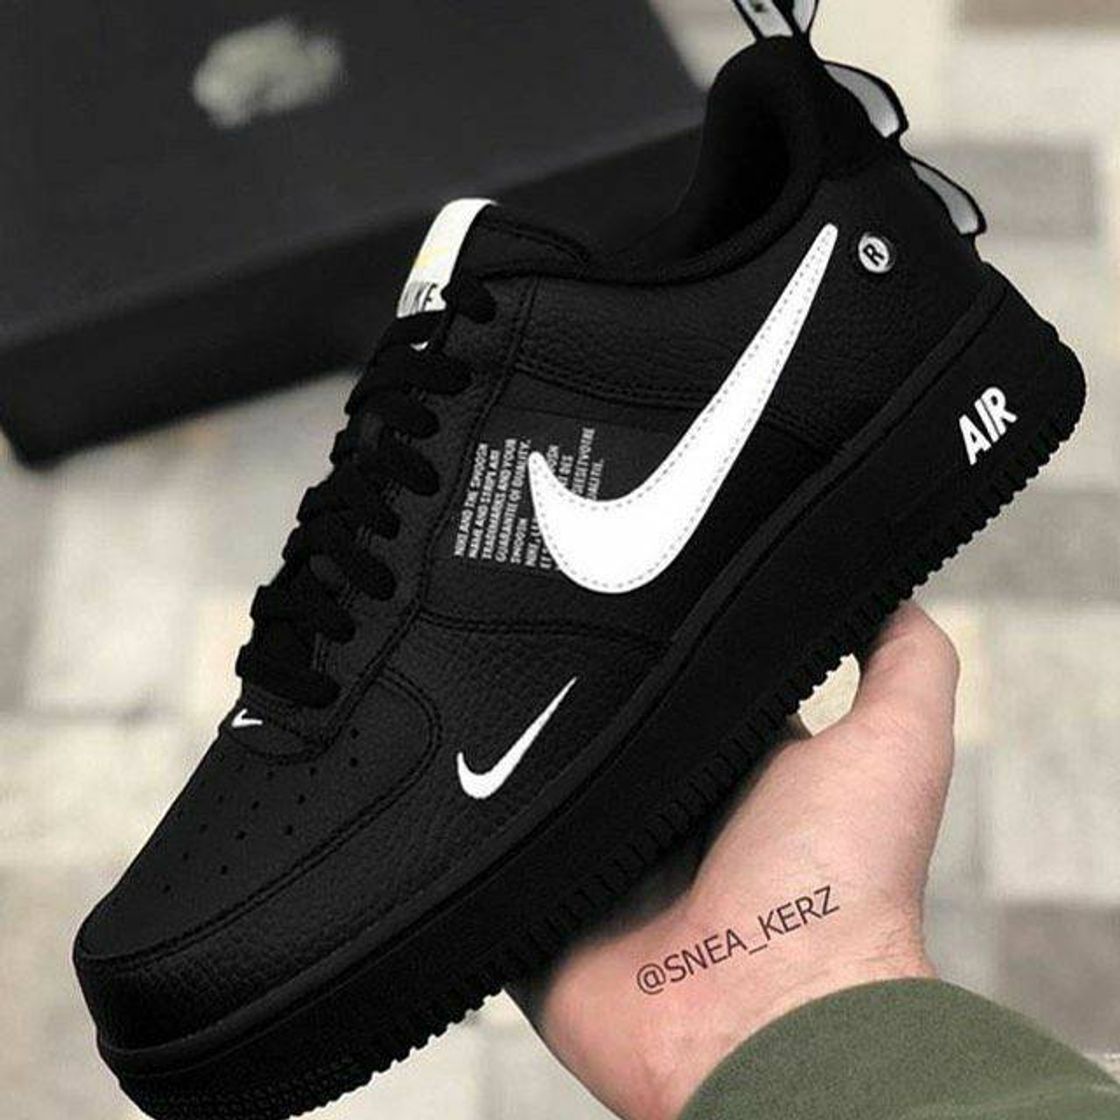 Nike Air force